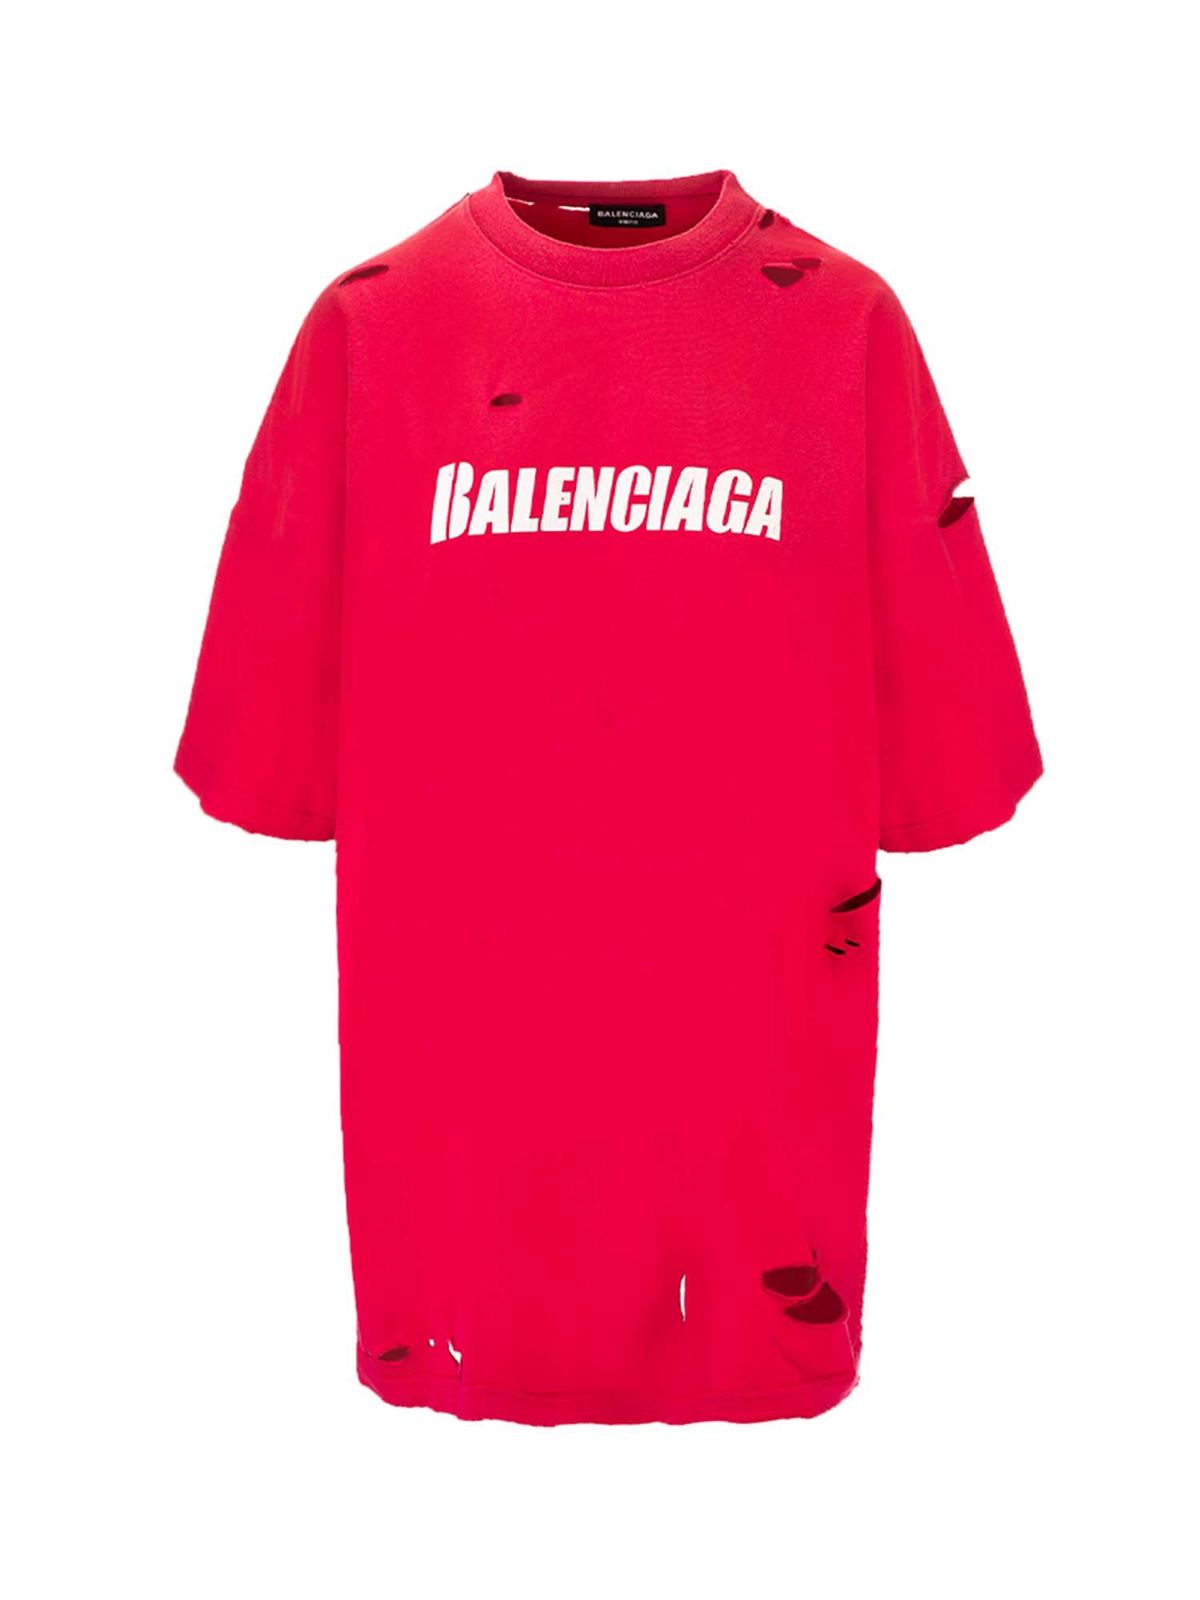 Balenciaga Caps Destroyed Flatground T-shirts In Fuchsia In Raspberry/white